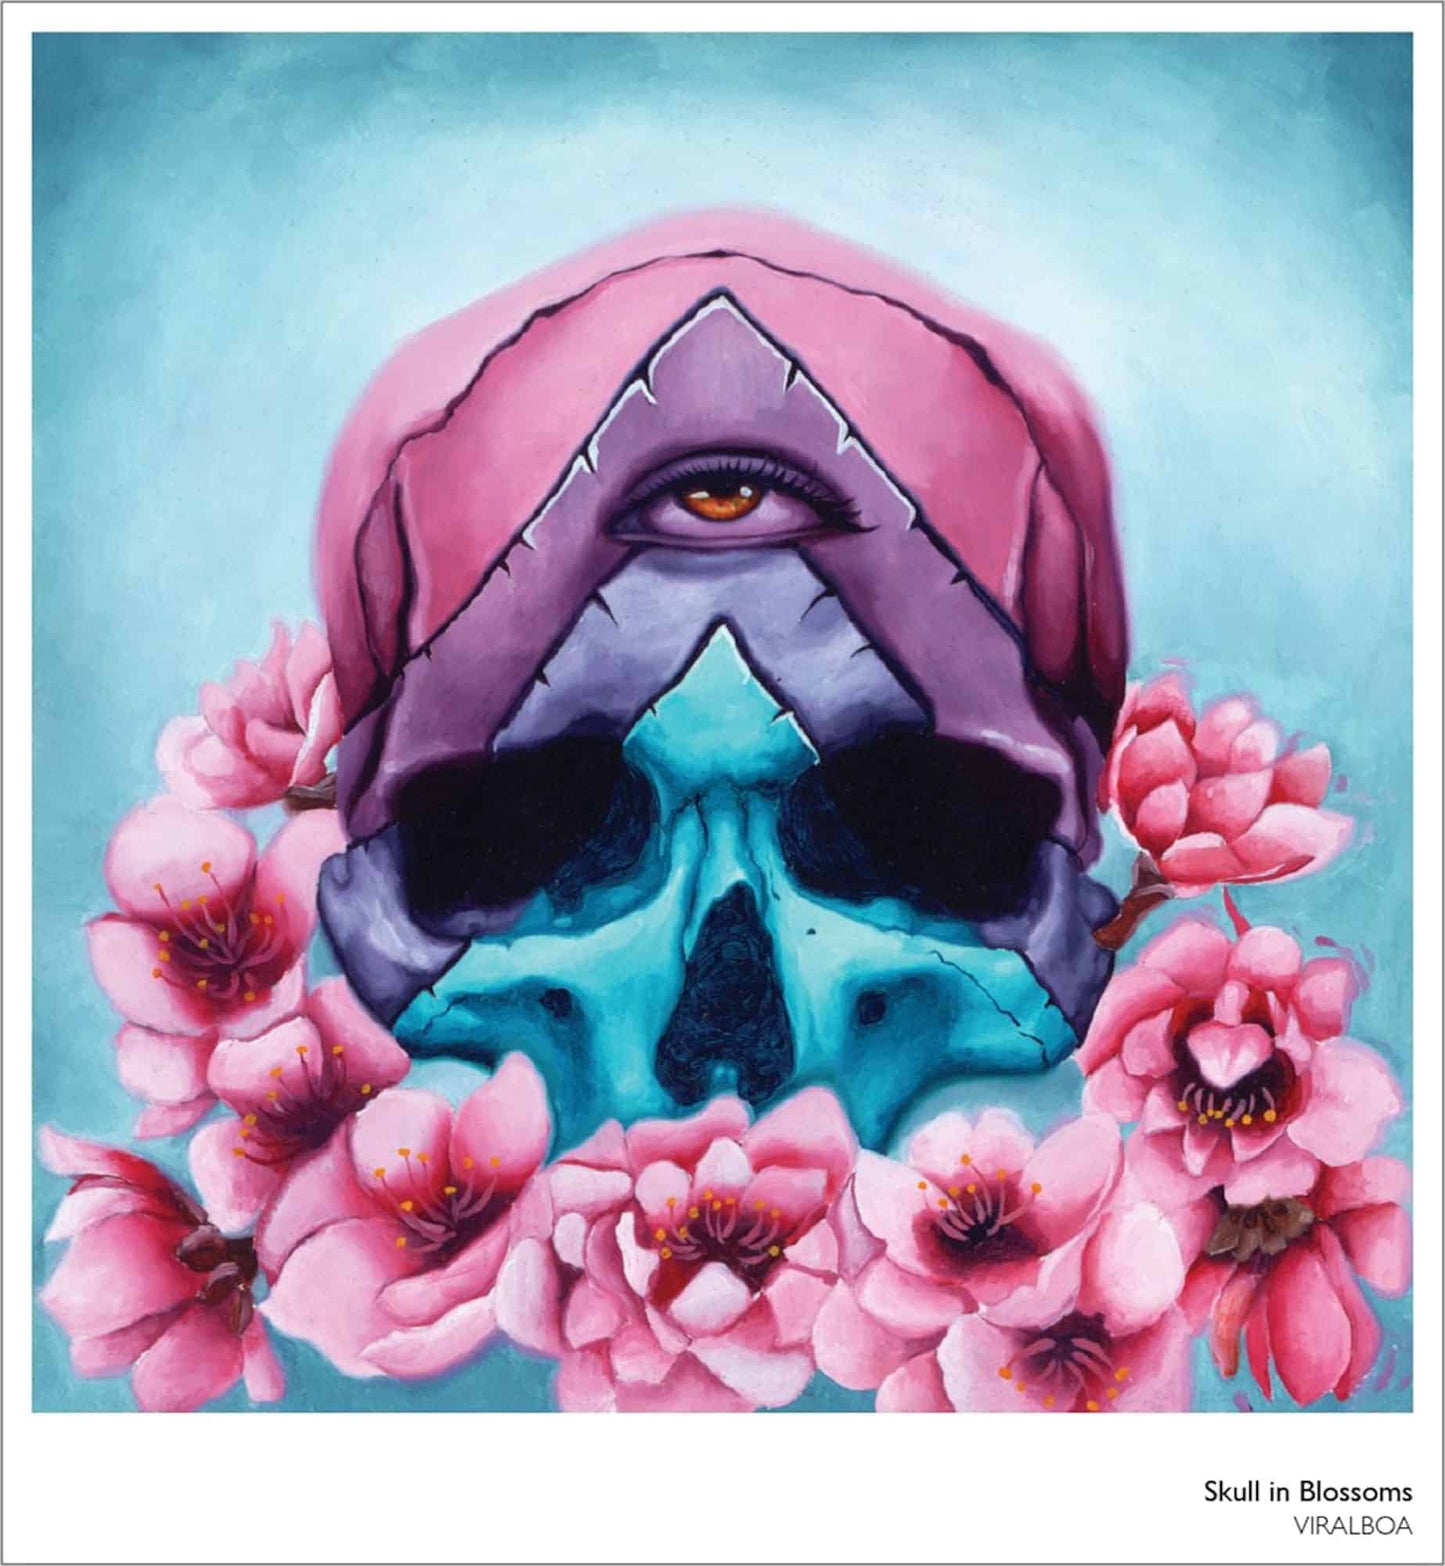 Skull in Blossom